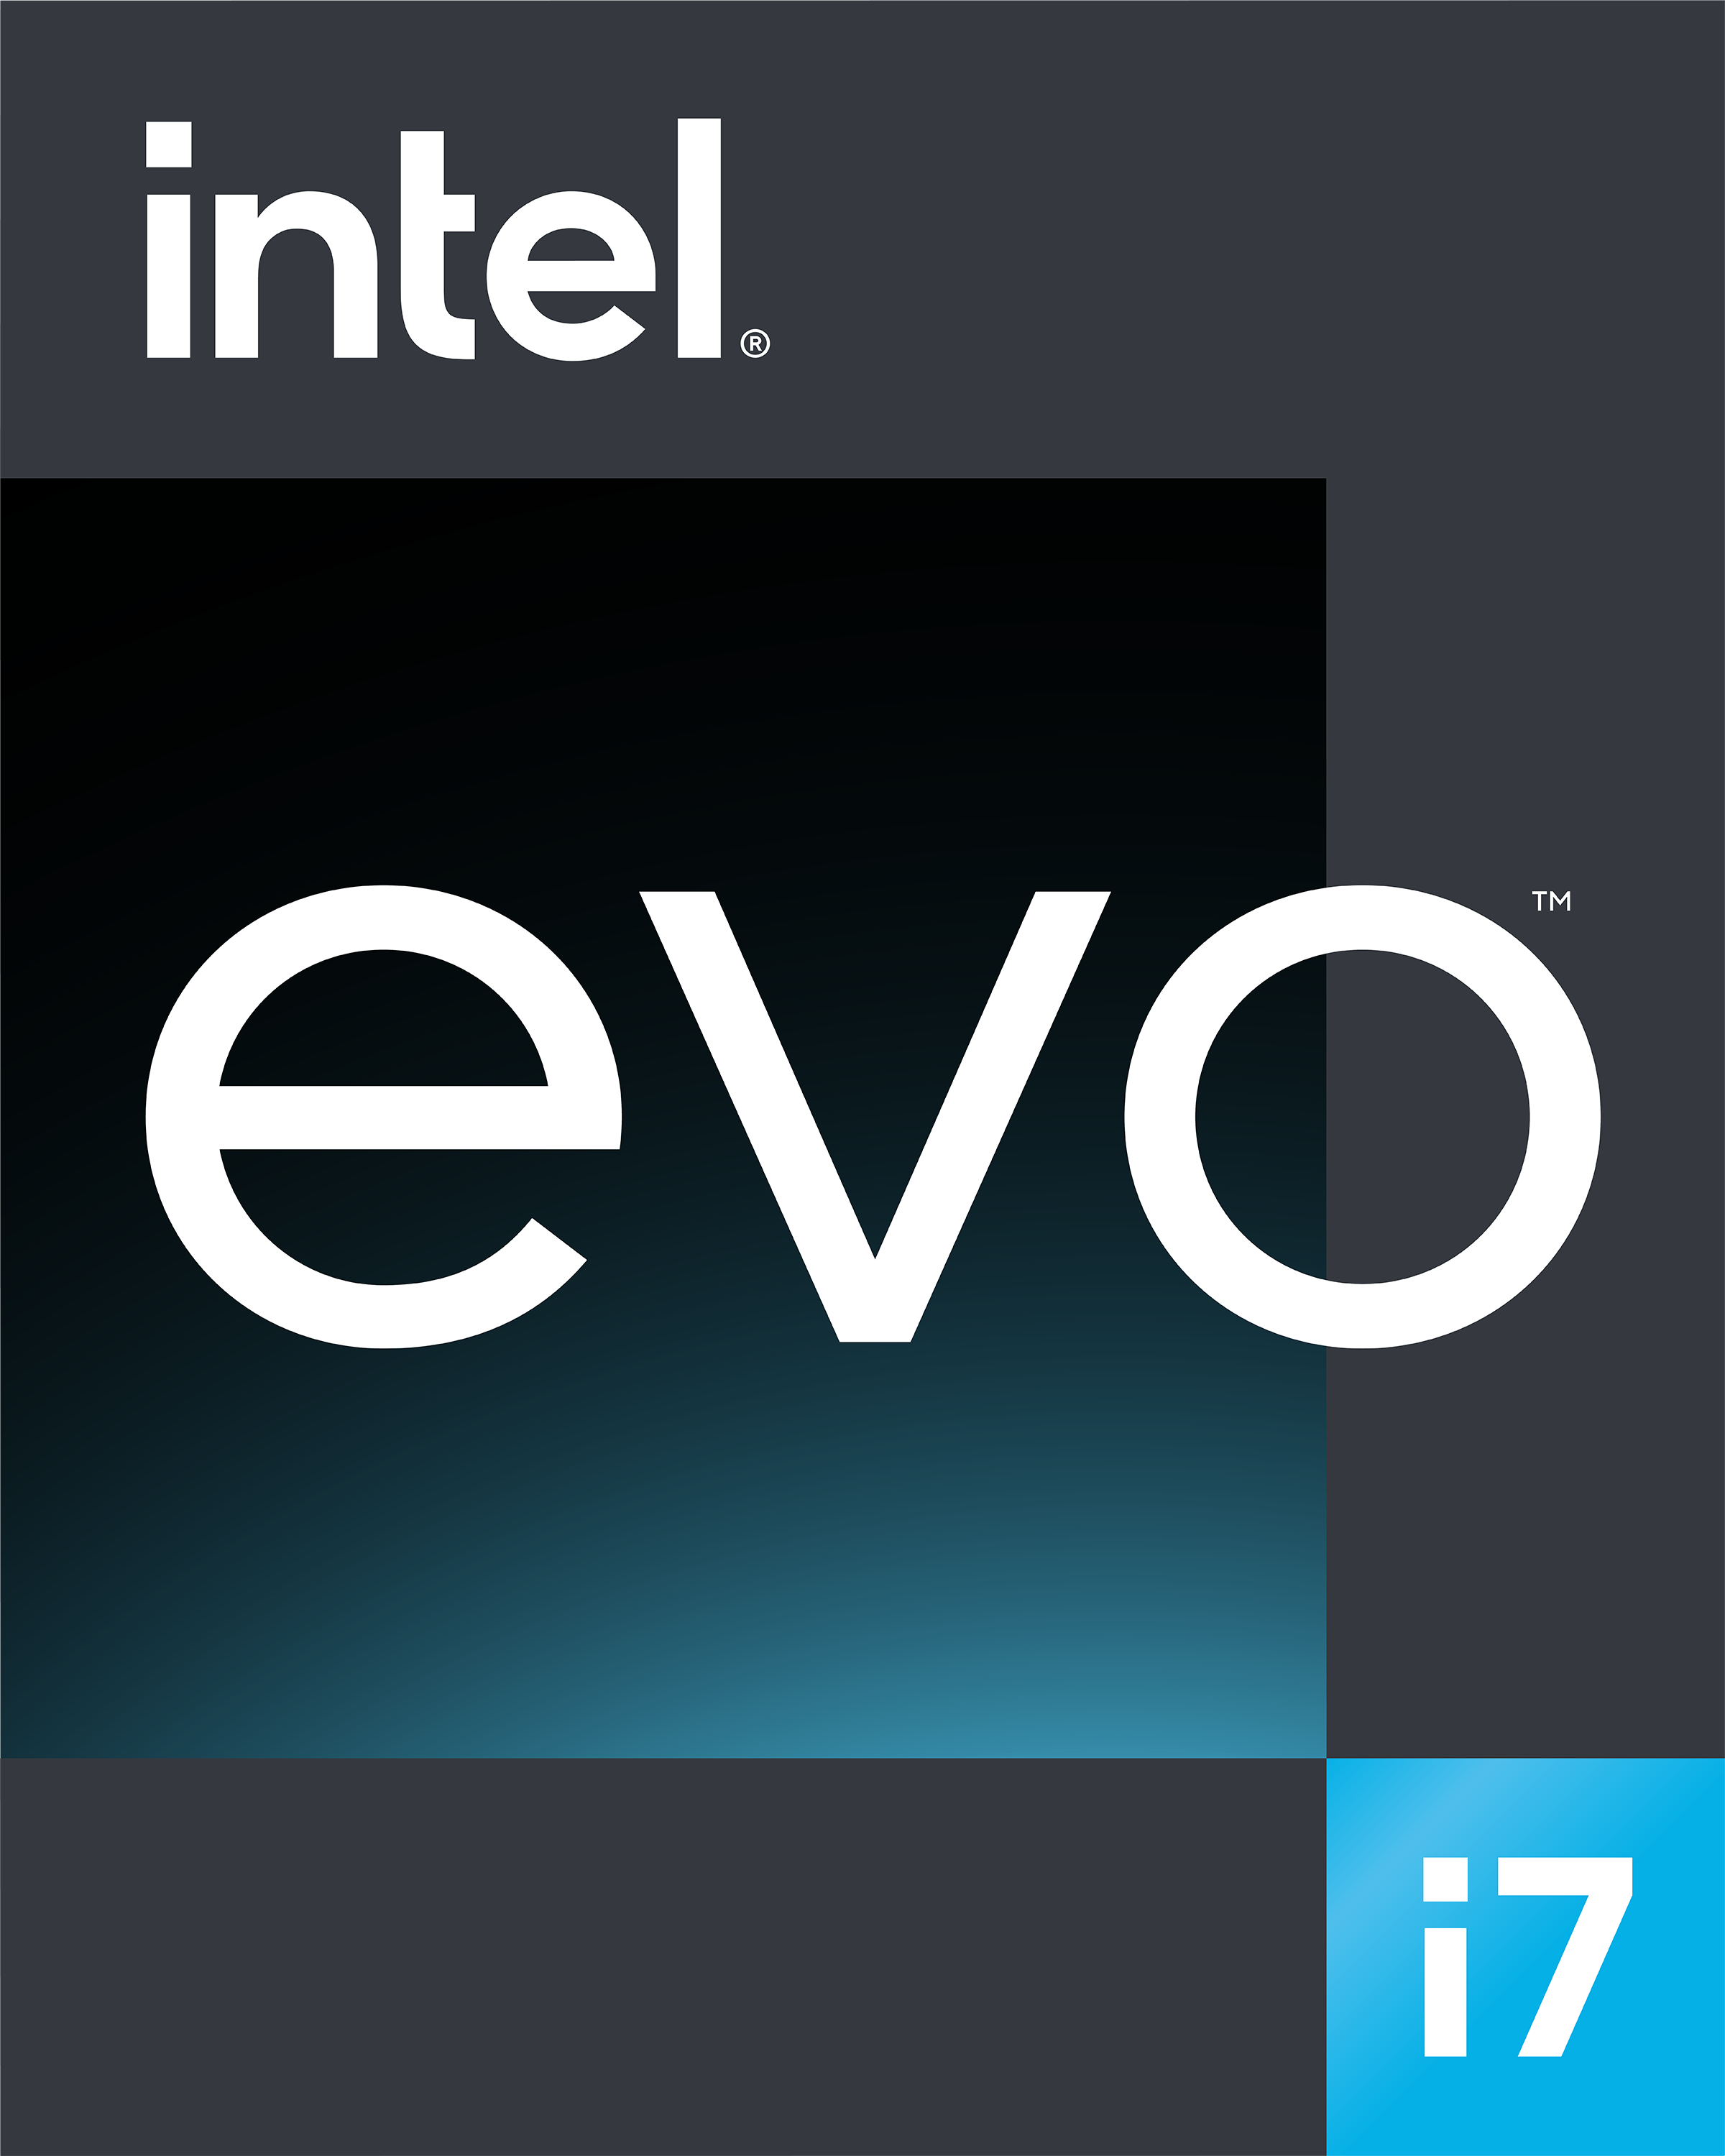 Intel khẳng định vị thế dẫn đầu trong lĩnh vực thiết bị vi xử lý di động